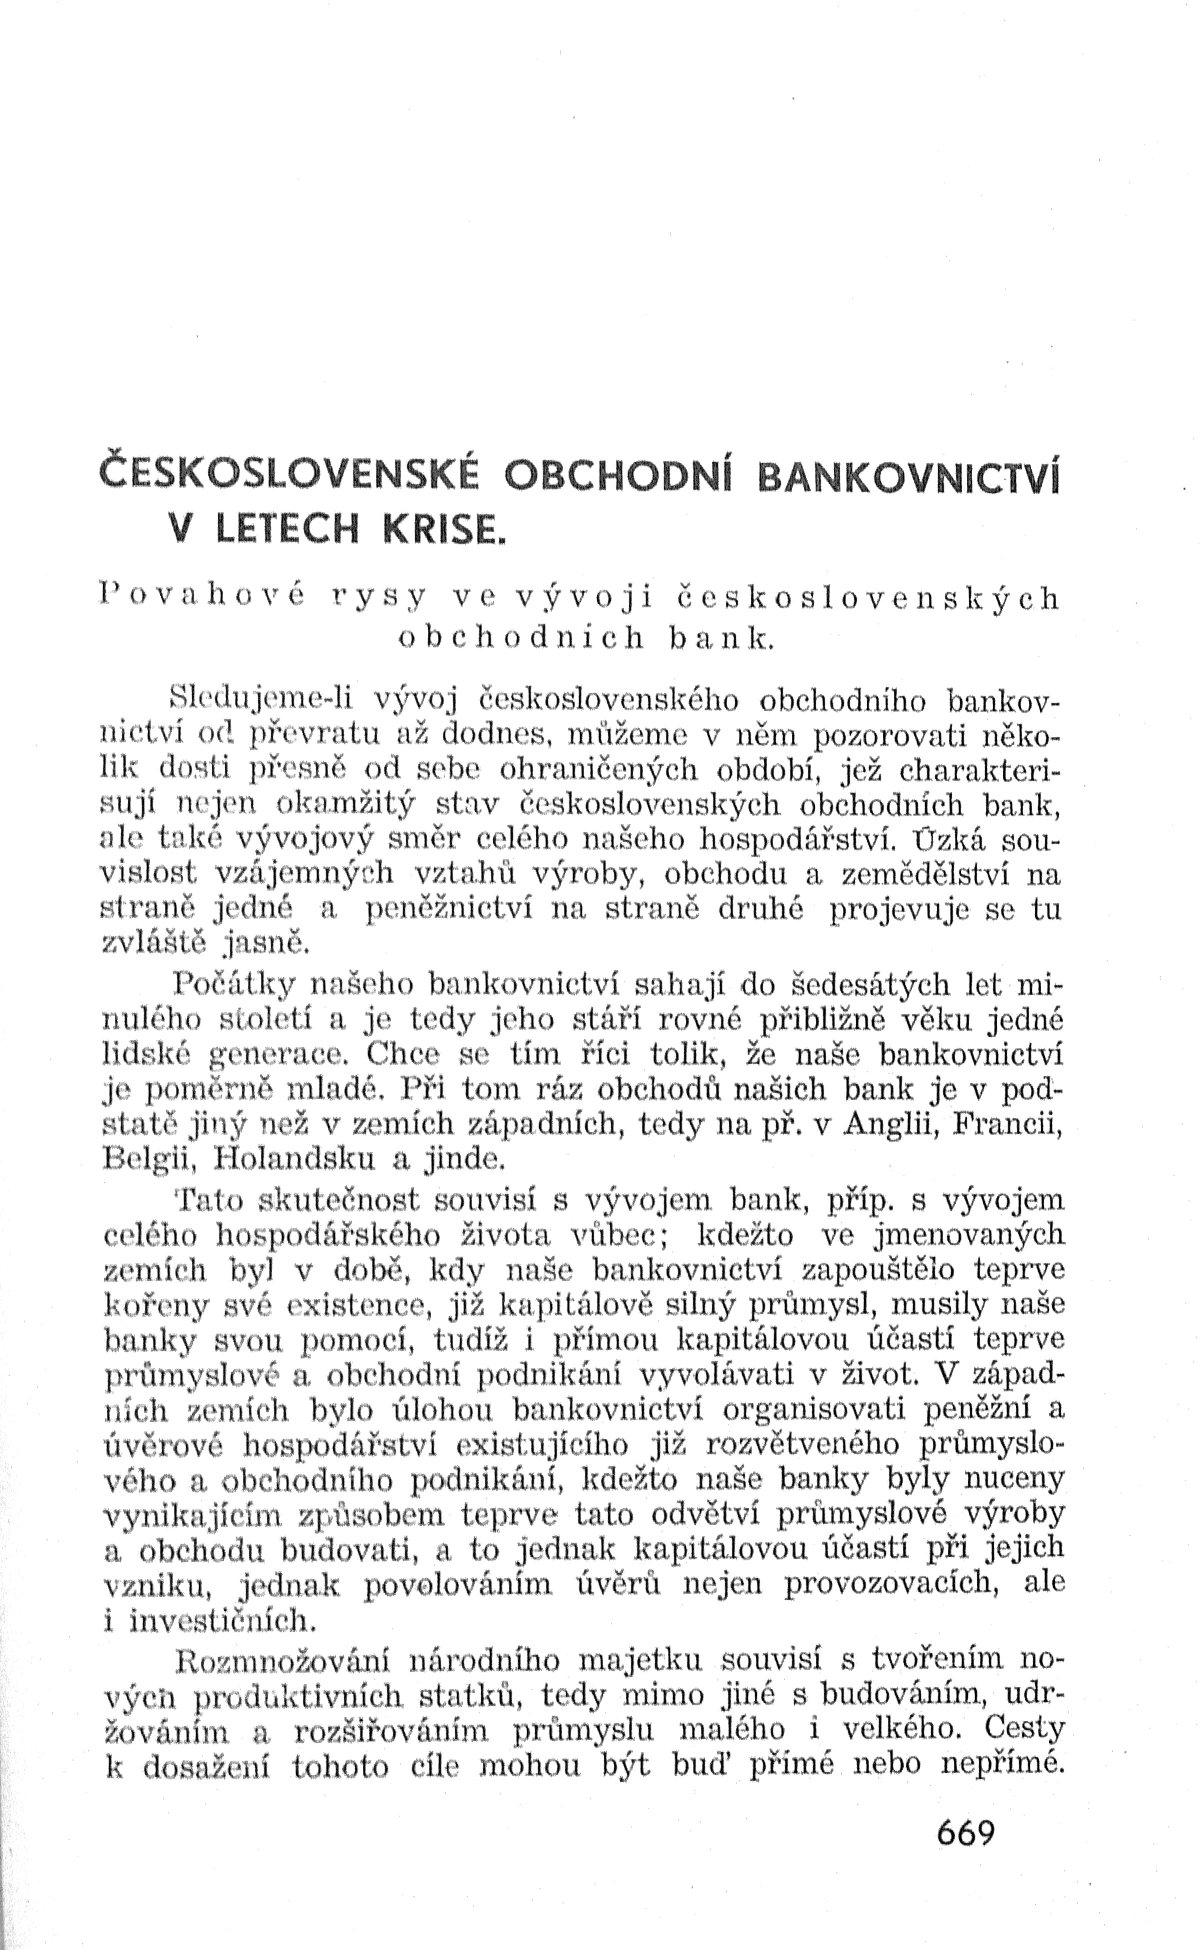 Československé obchodní bankovnictví v letech krise